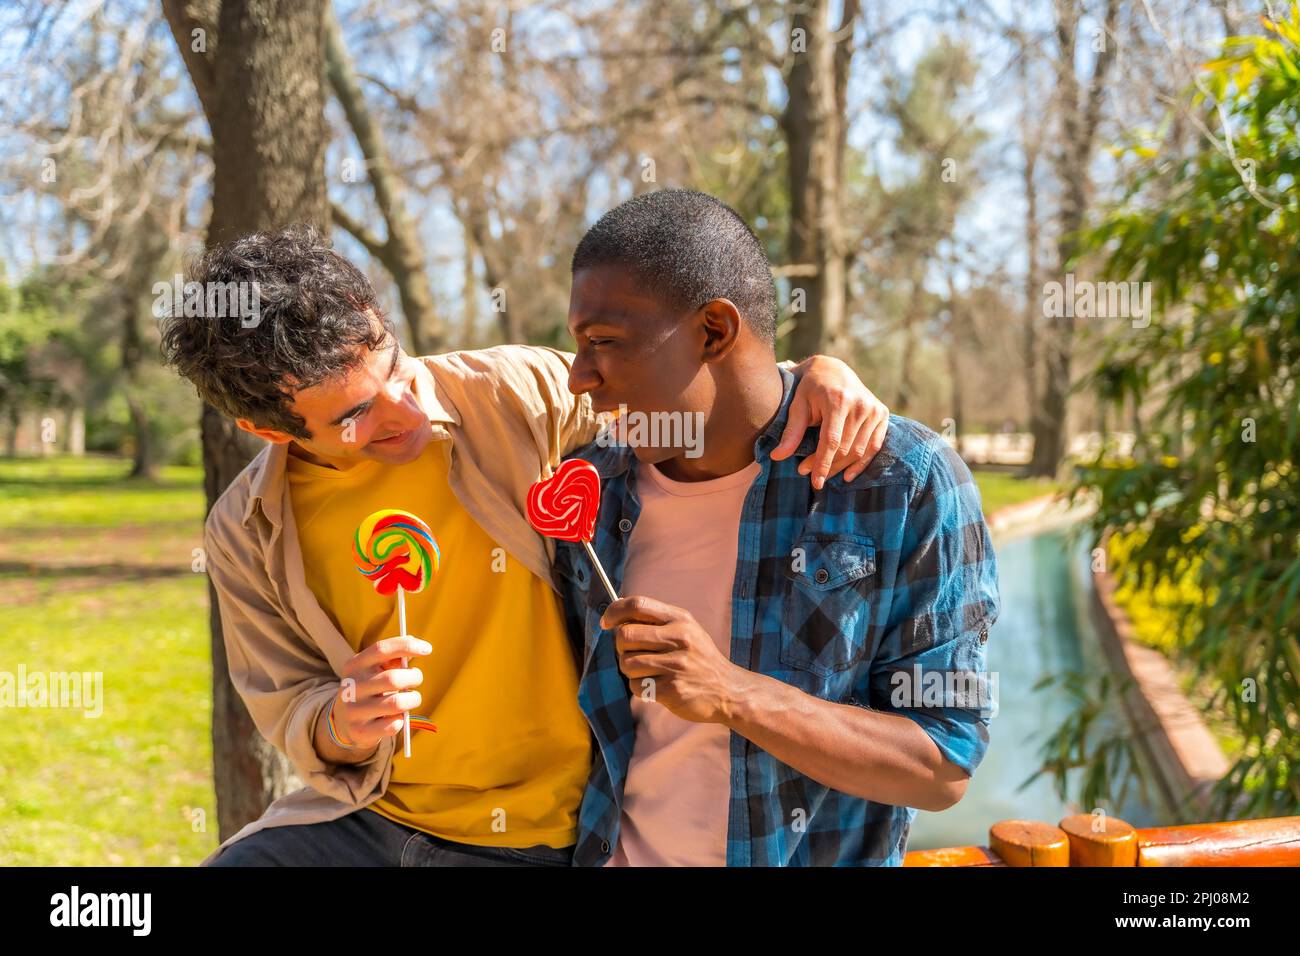 Couple d'hommes multiethniques mangeant un lollipop, lgbt concept, ayant le plaisir et sourire dans un parc Banque D'Images